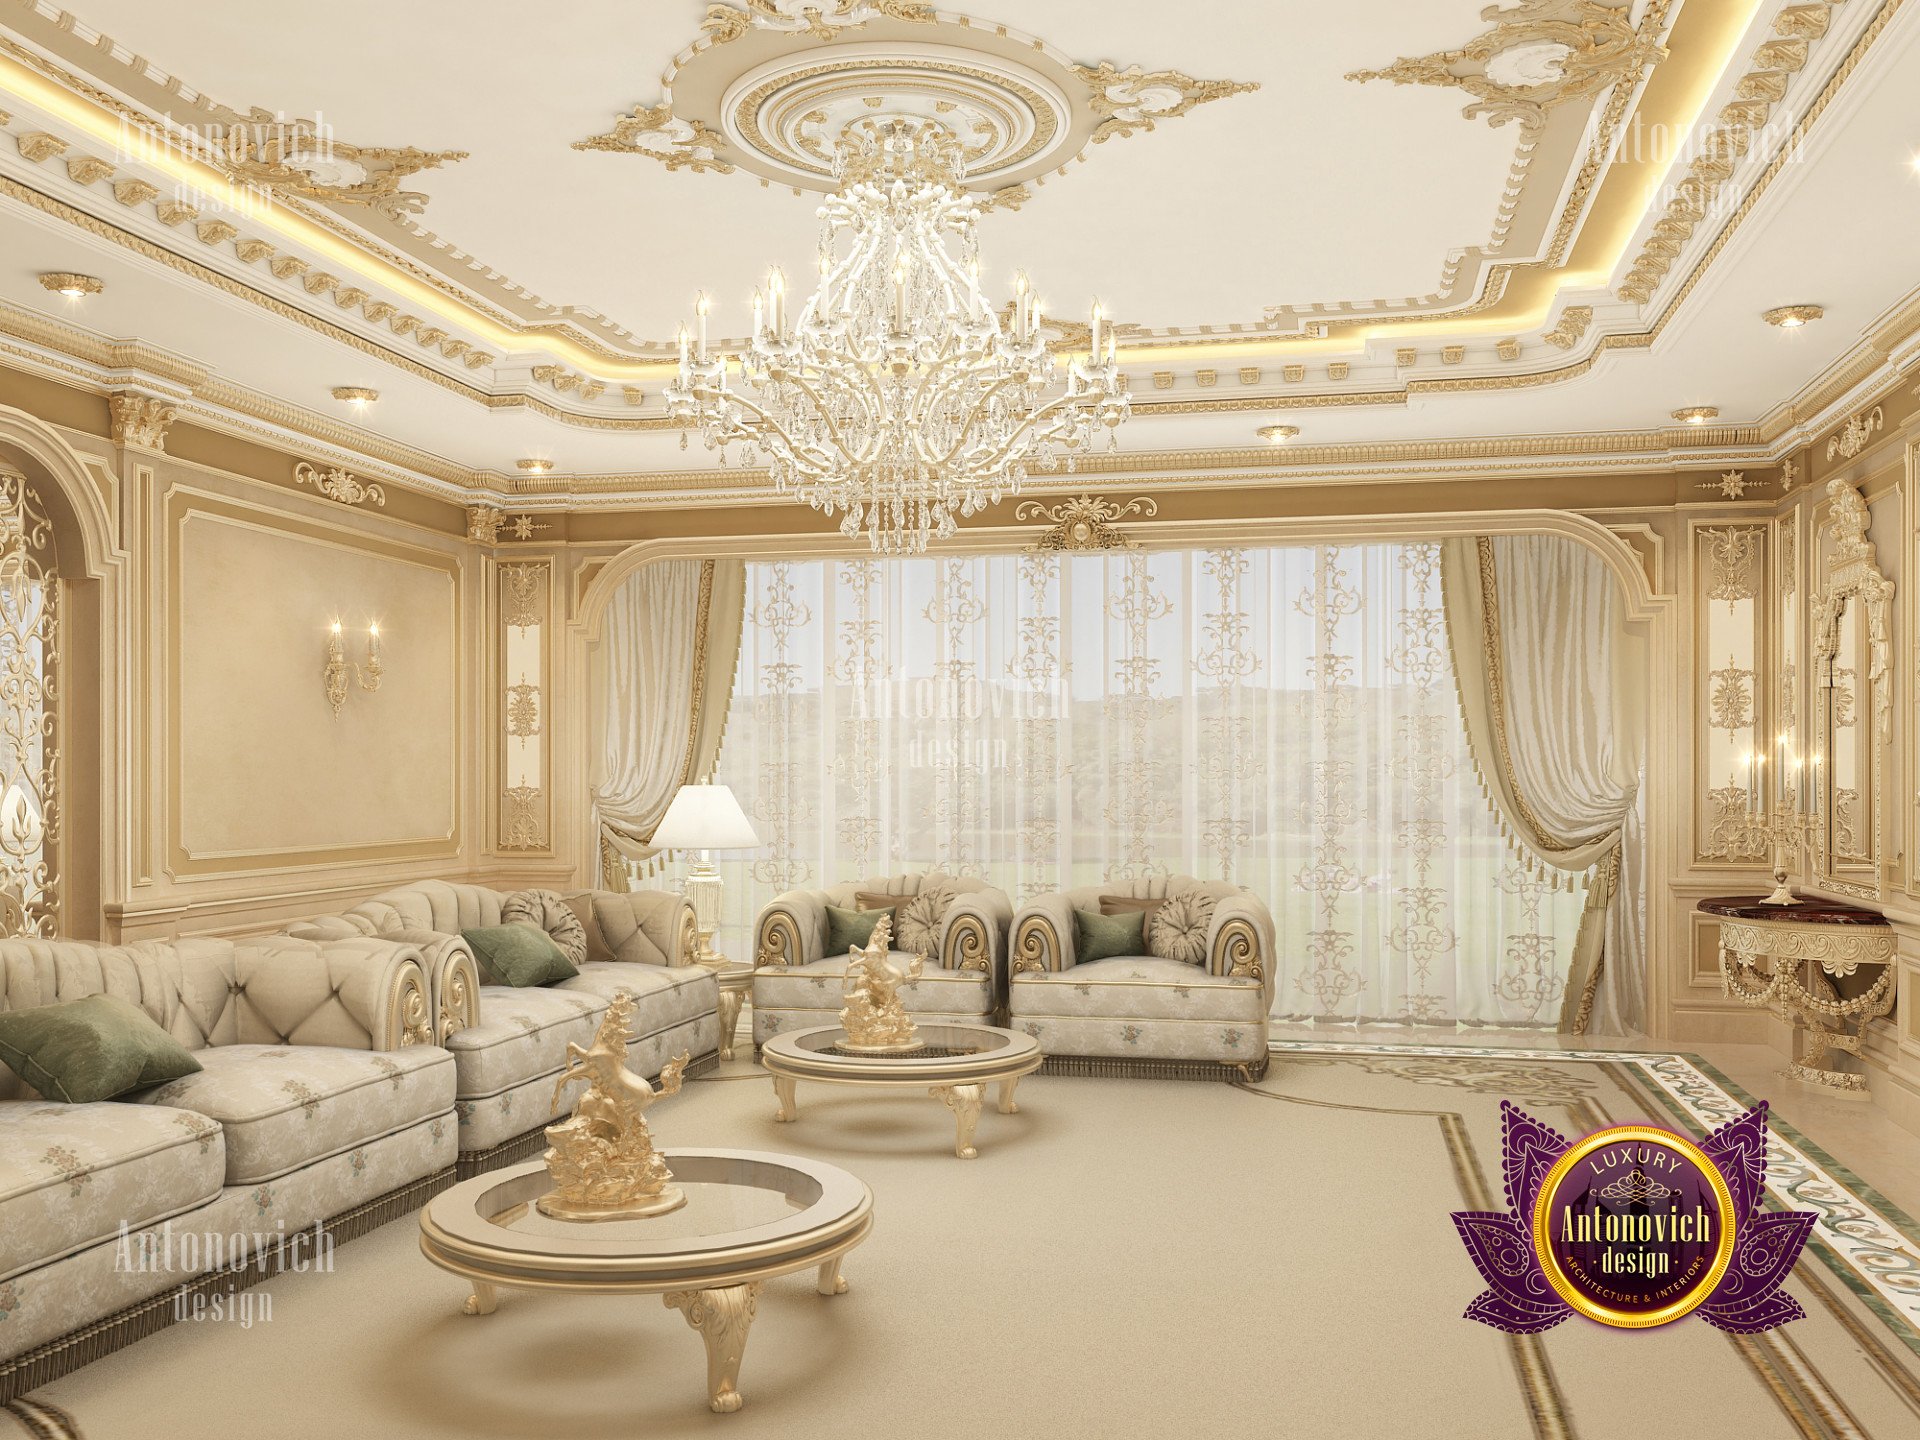 Family house luxury interior